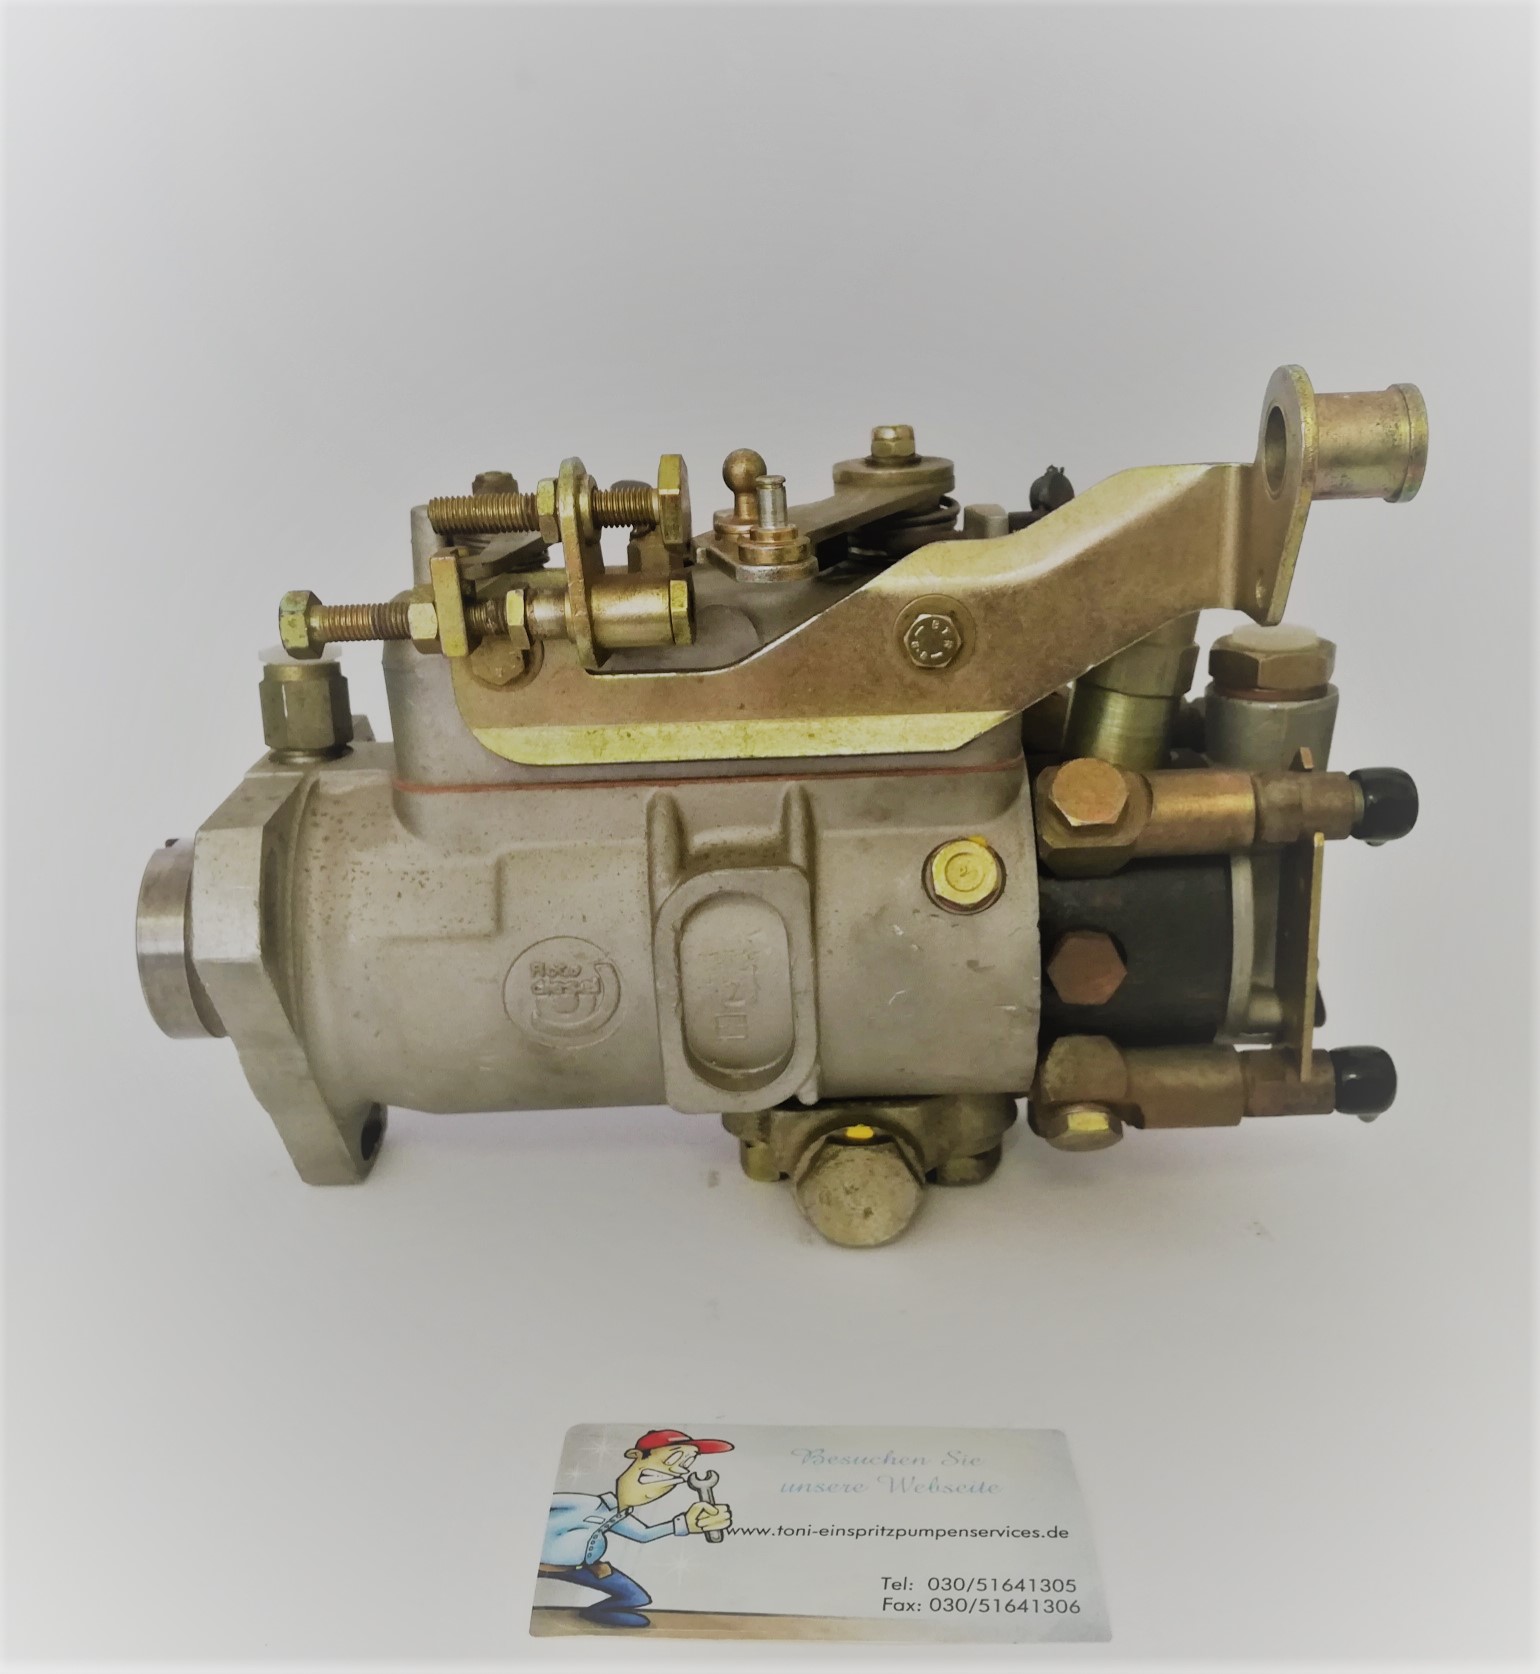 Diesel Pump 220 Volt - F.lli Bonezzi